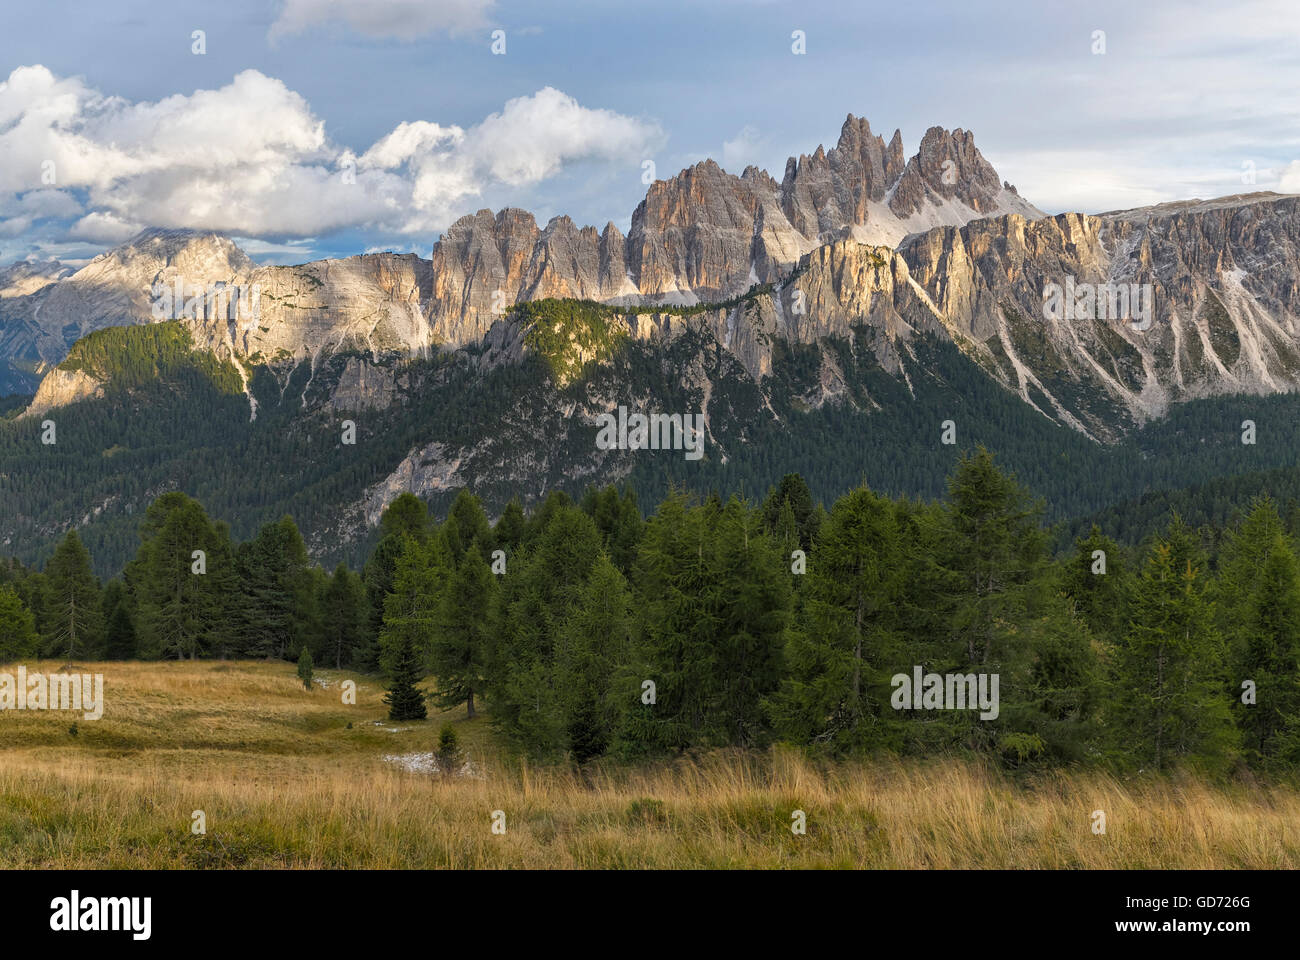 Croda da Lago & Lastoni di Formin mountain ranges seen from Rifugio Cinque Torri, Dolomites. Stock Photo